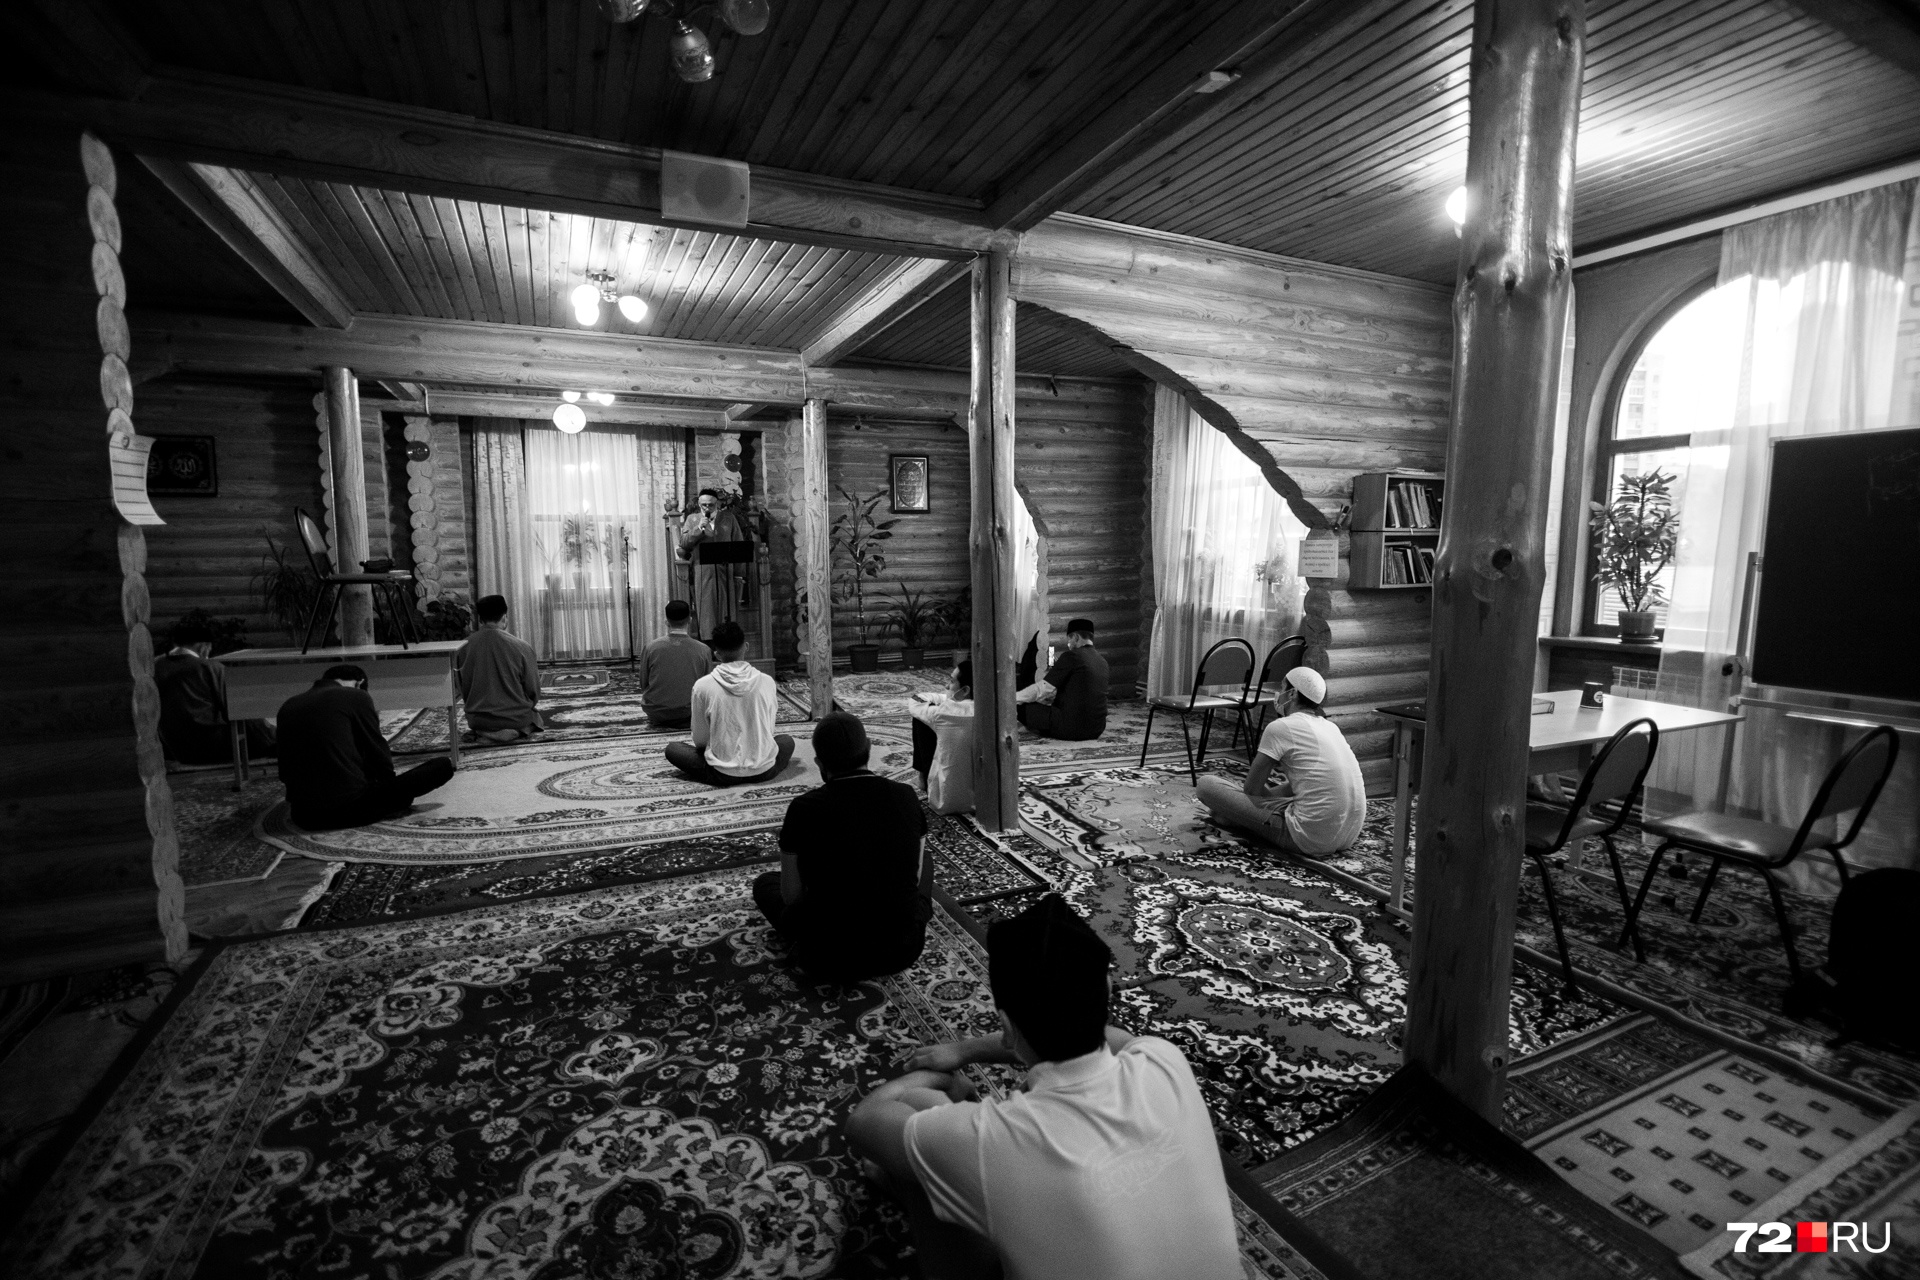 Обычно во время празднования Курбан-байрама здесь не протолкнуться. Люди молятся на ковриках на улице по причине отсутствия мест в здании. Но не в этот раз